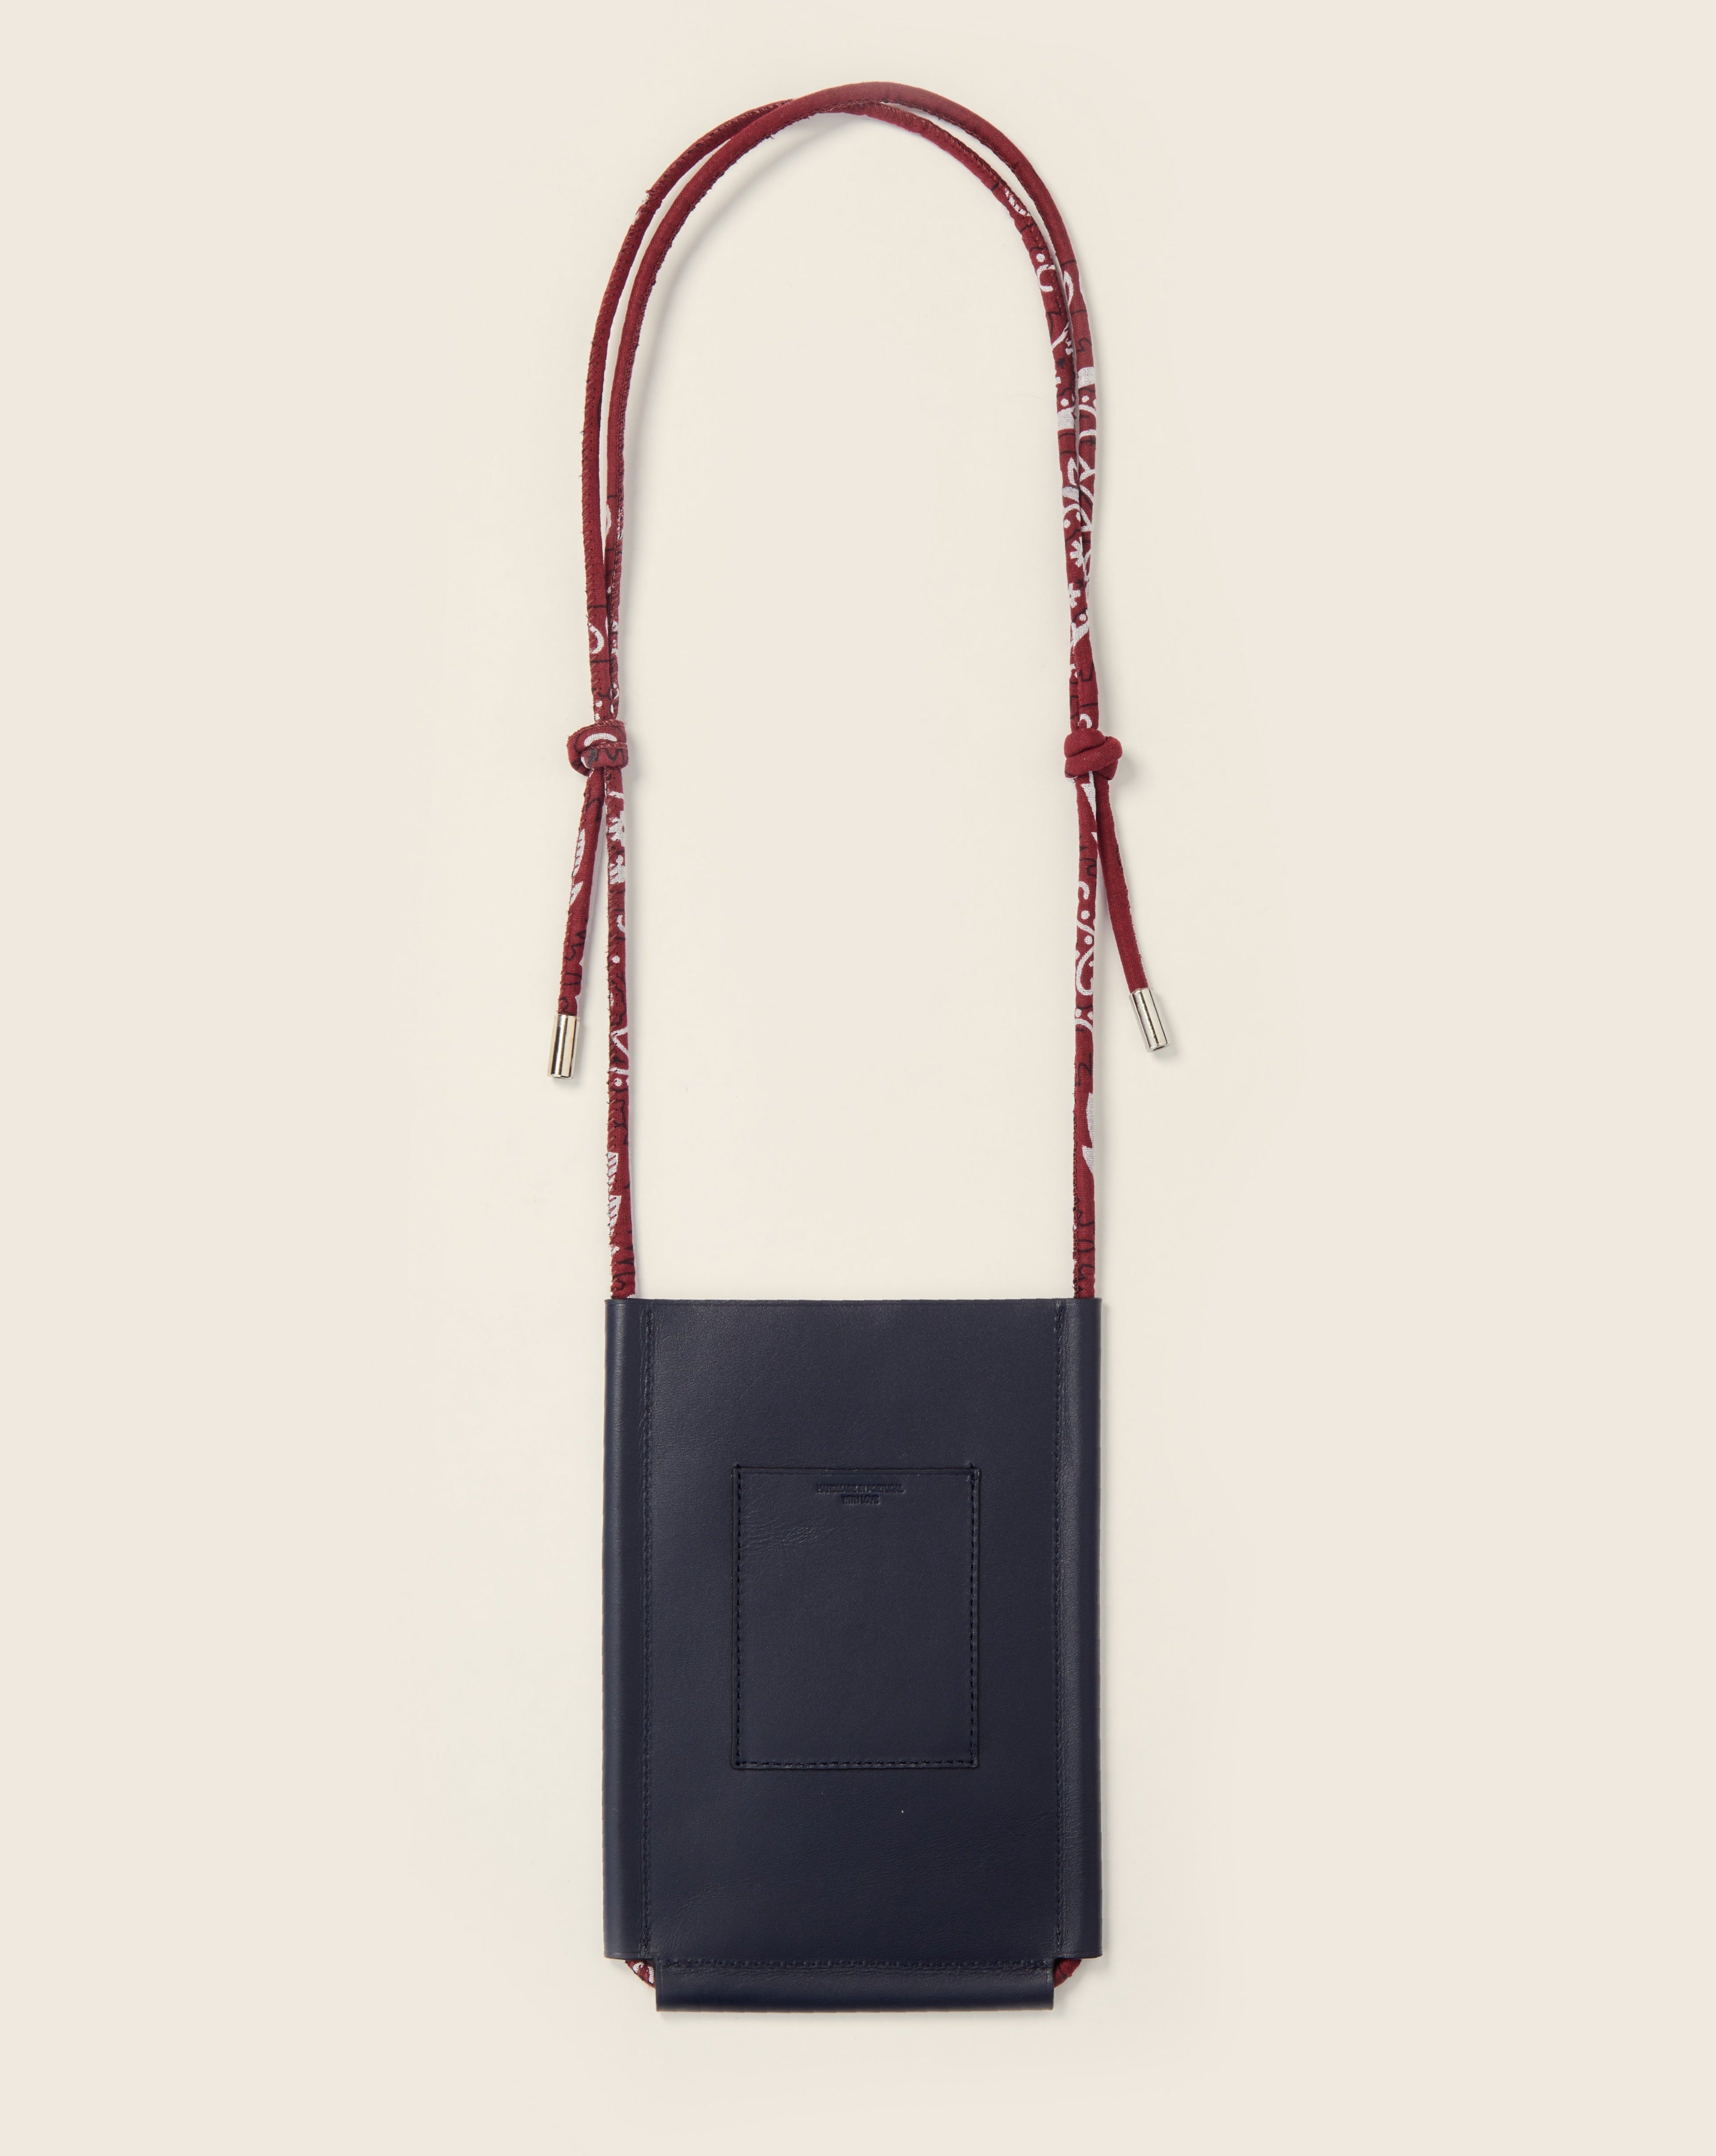 DENALI - Leather phone sleeve - Navy leather & Bandana burgundy